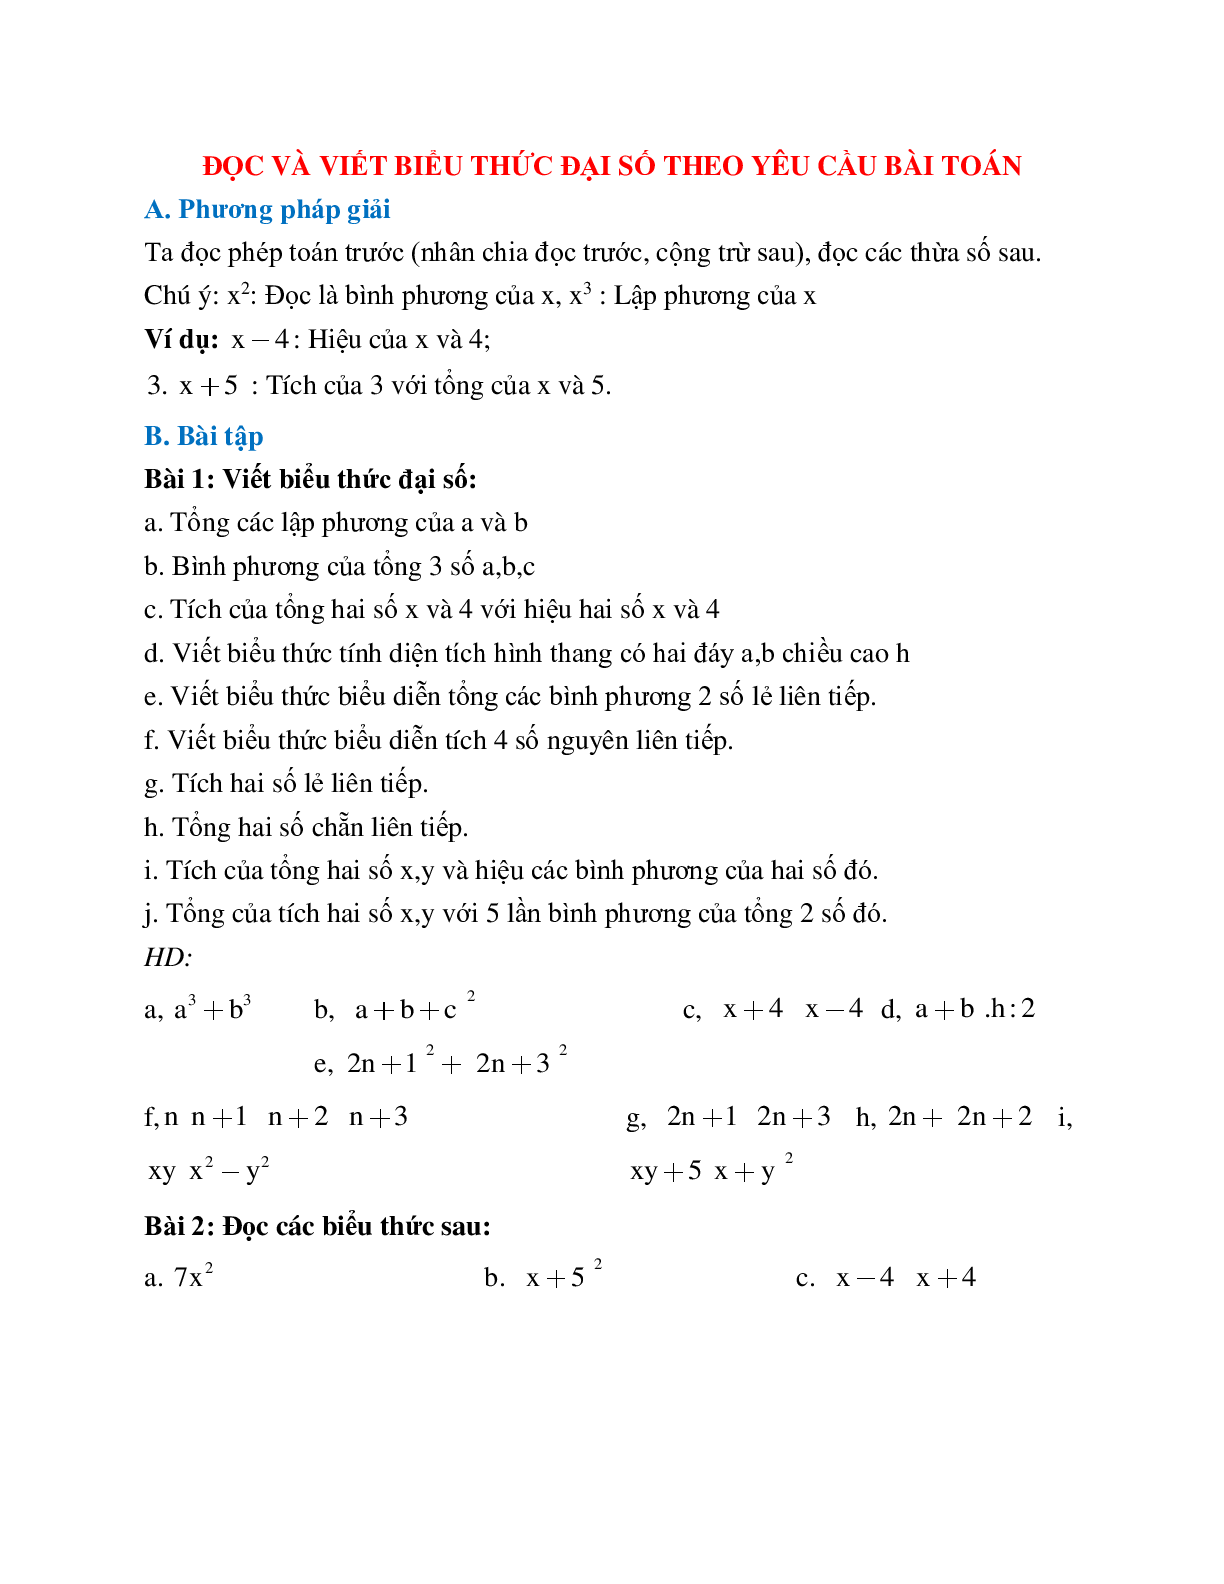 Lý thuyết và bài tập về đọc và viết biểu thức đại số theo yêu cầu bài toán chọn lọc (trang 1)